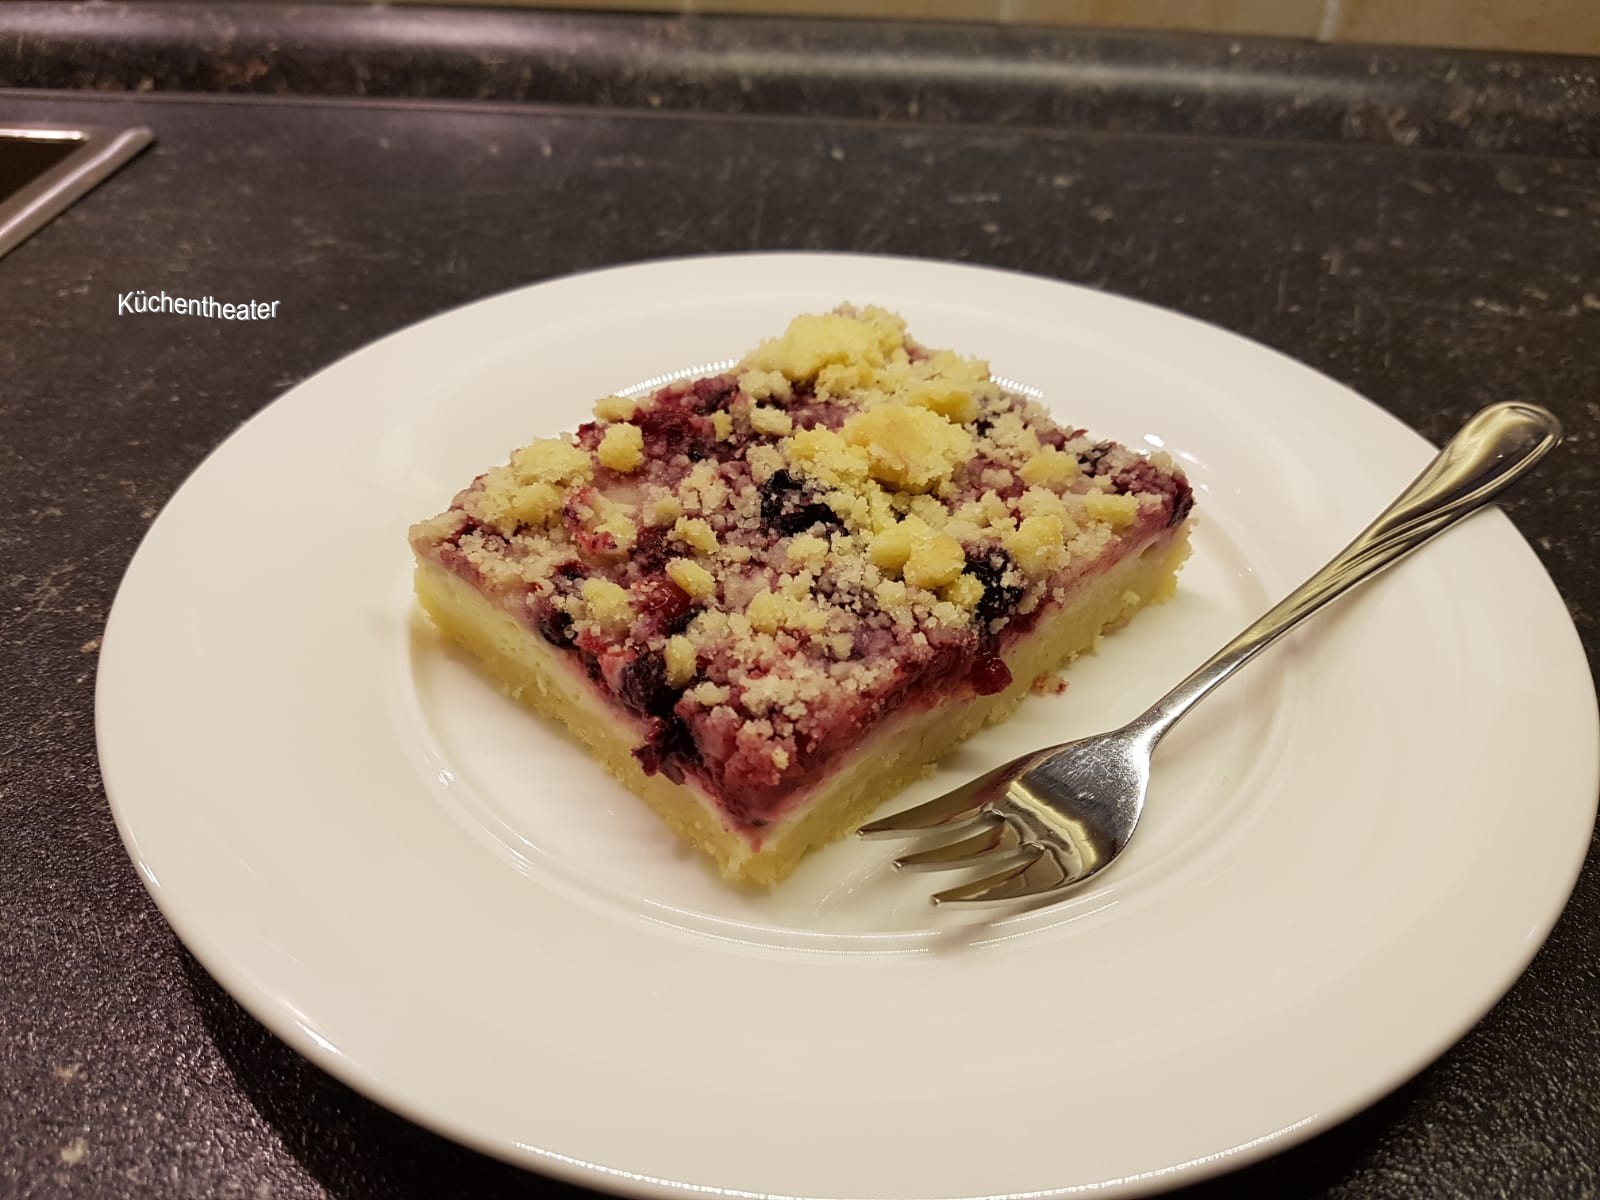 Küchentheater: Streusel-Pudding-Schnitten mit Beeren